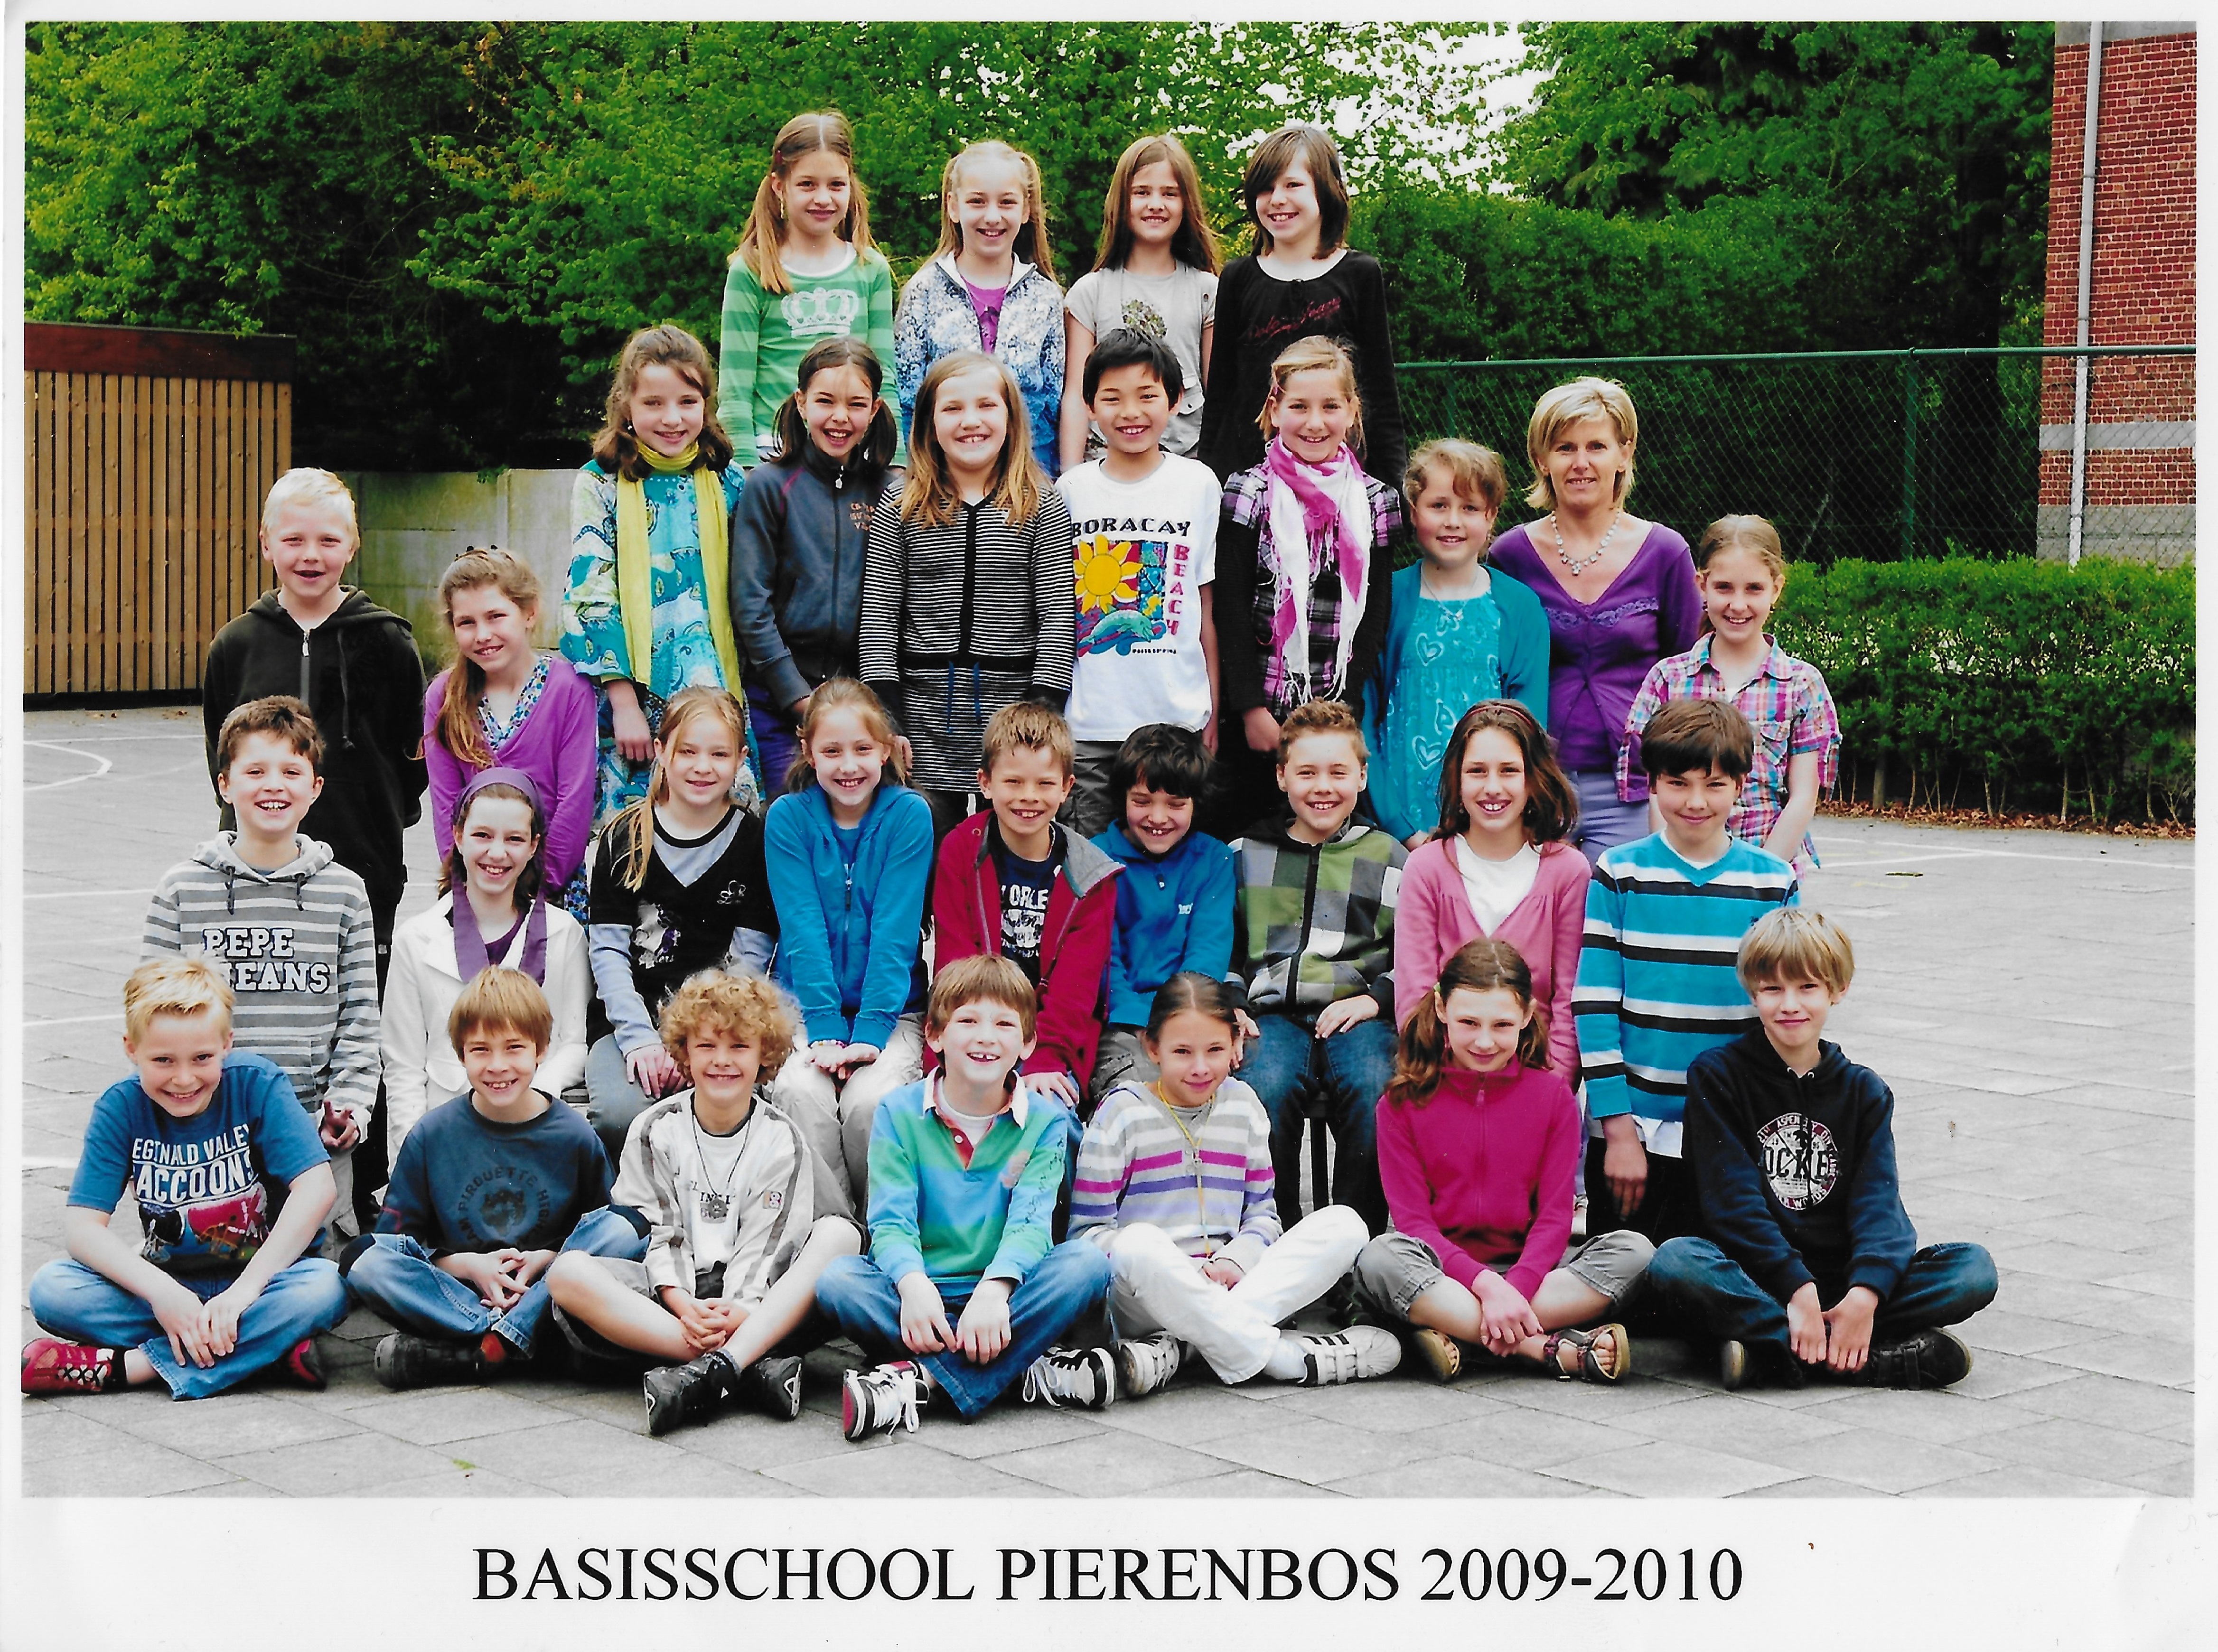 2009-2010 klasfoto 4e leerjaar Karin keysers, Pierenbos Gemeenteschool Lindedreef 18.jpeg